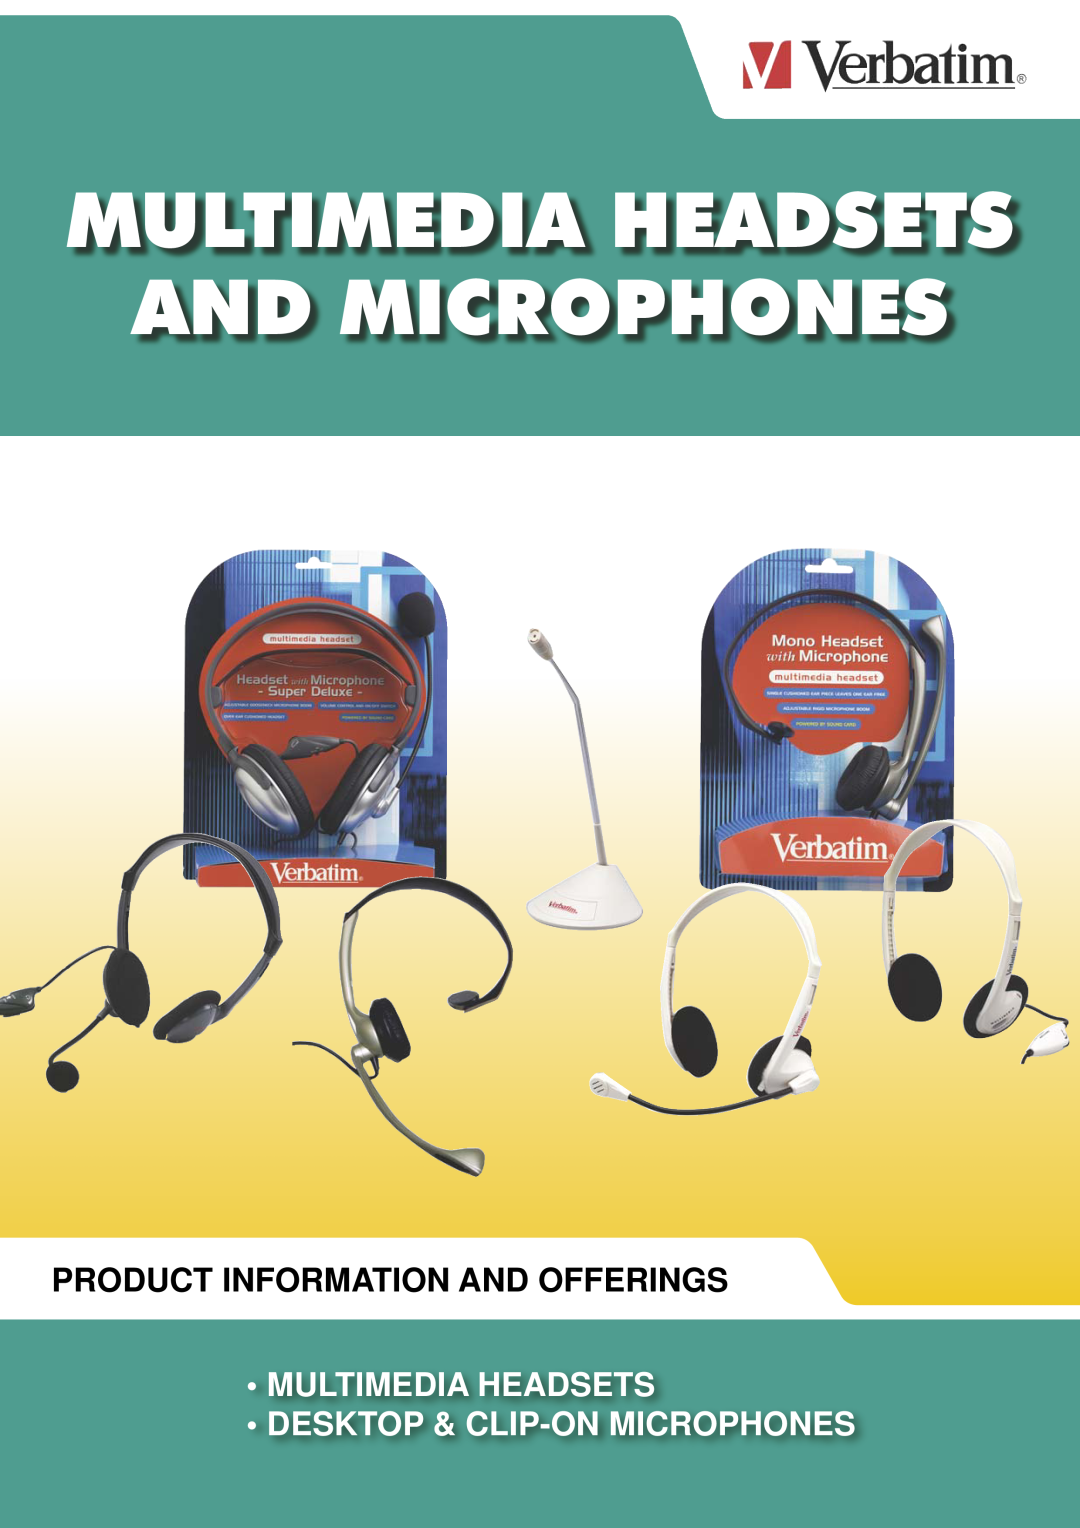 Verbatim Multimedia Headsets & Microphones manual Multimedia Headsets And Microphones, Product Information And Offerings 